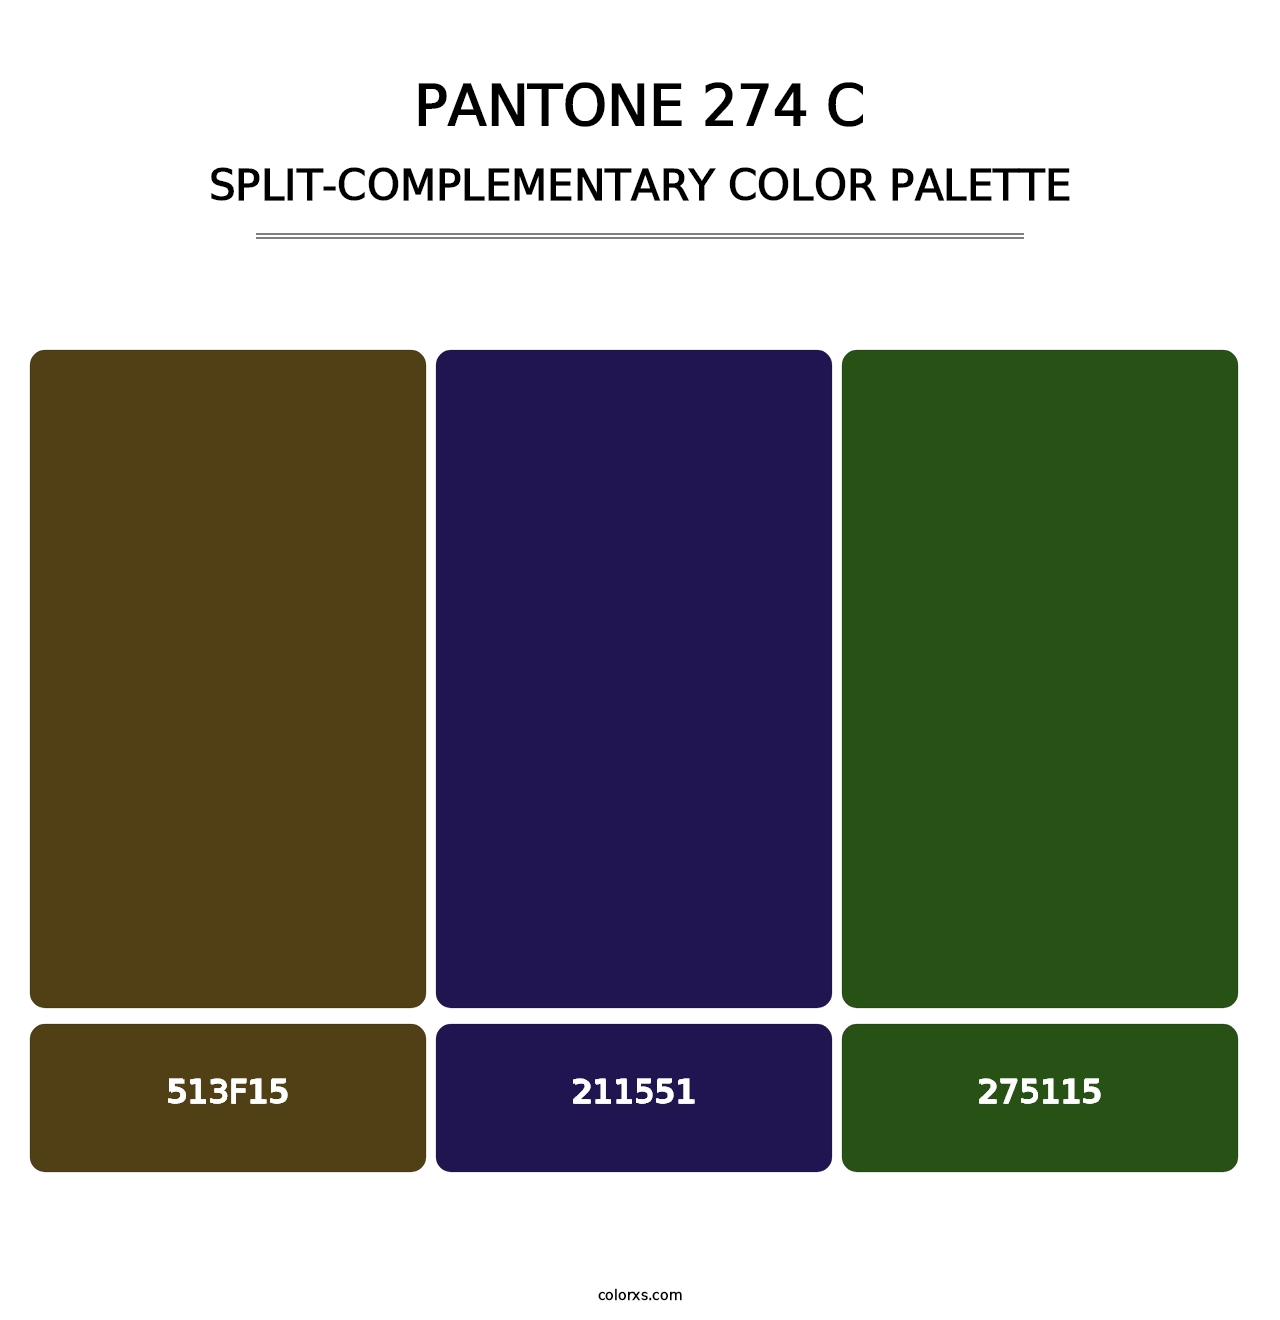 PANTONE 274 C - Split-Complementary Color Palette